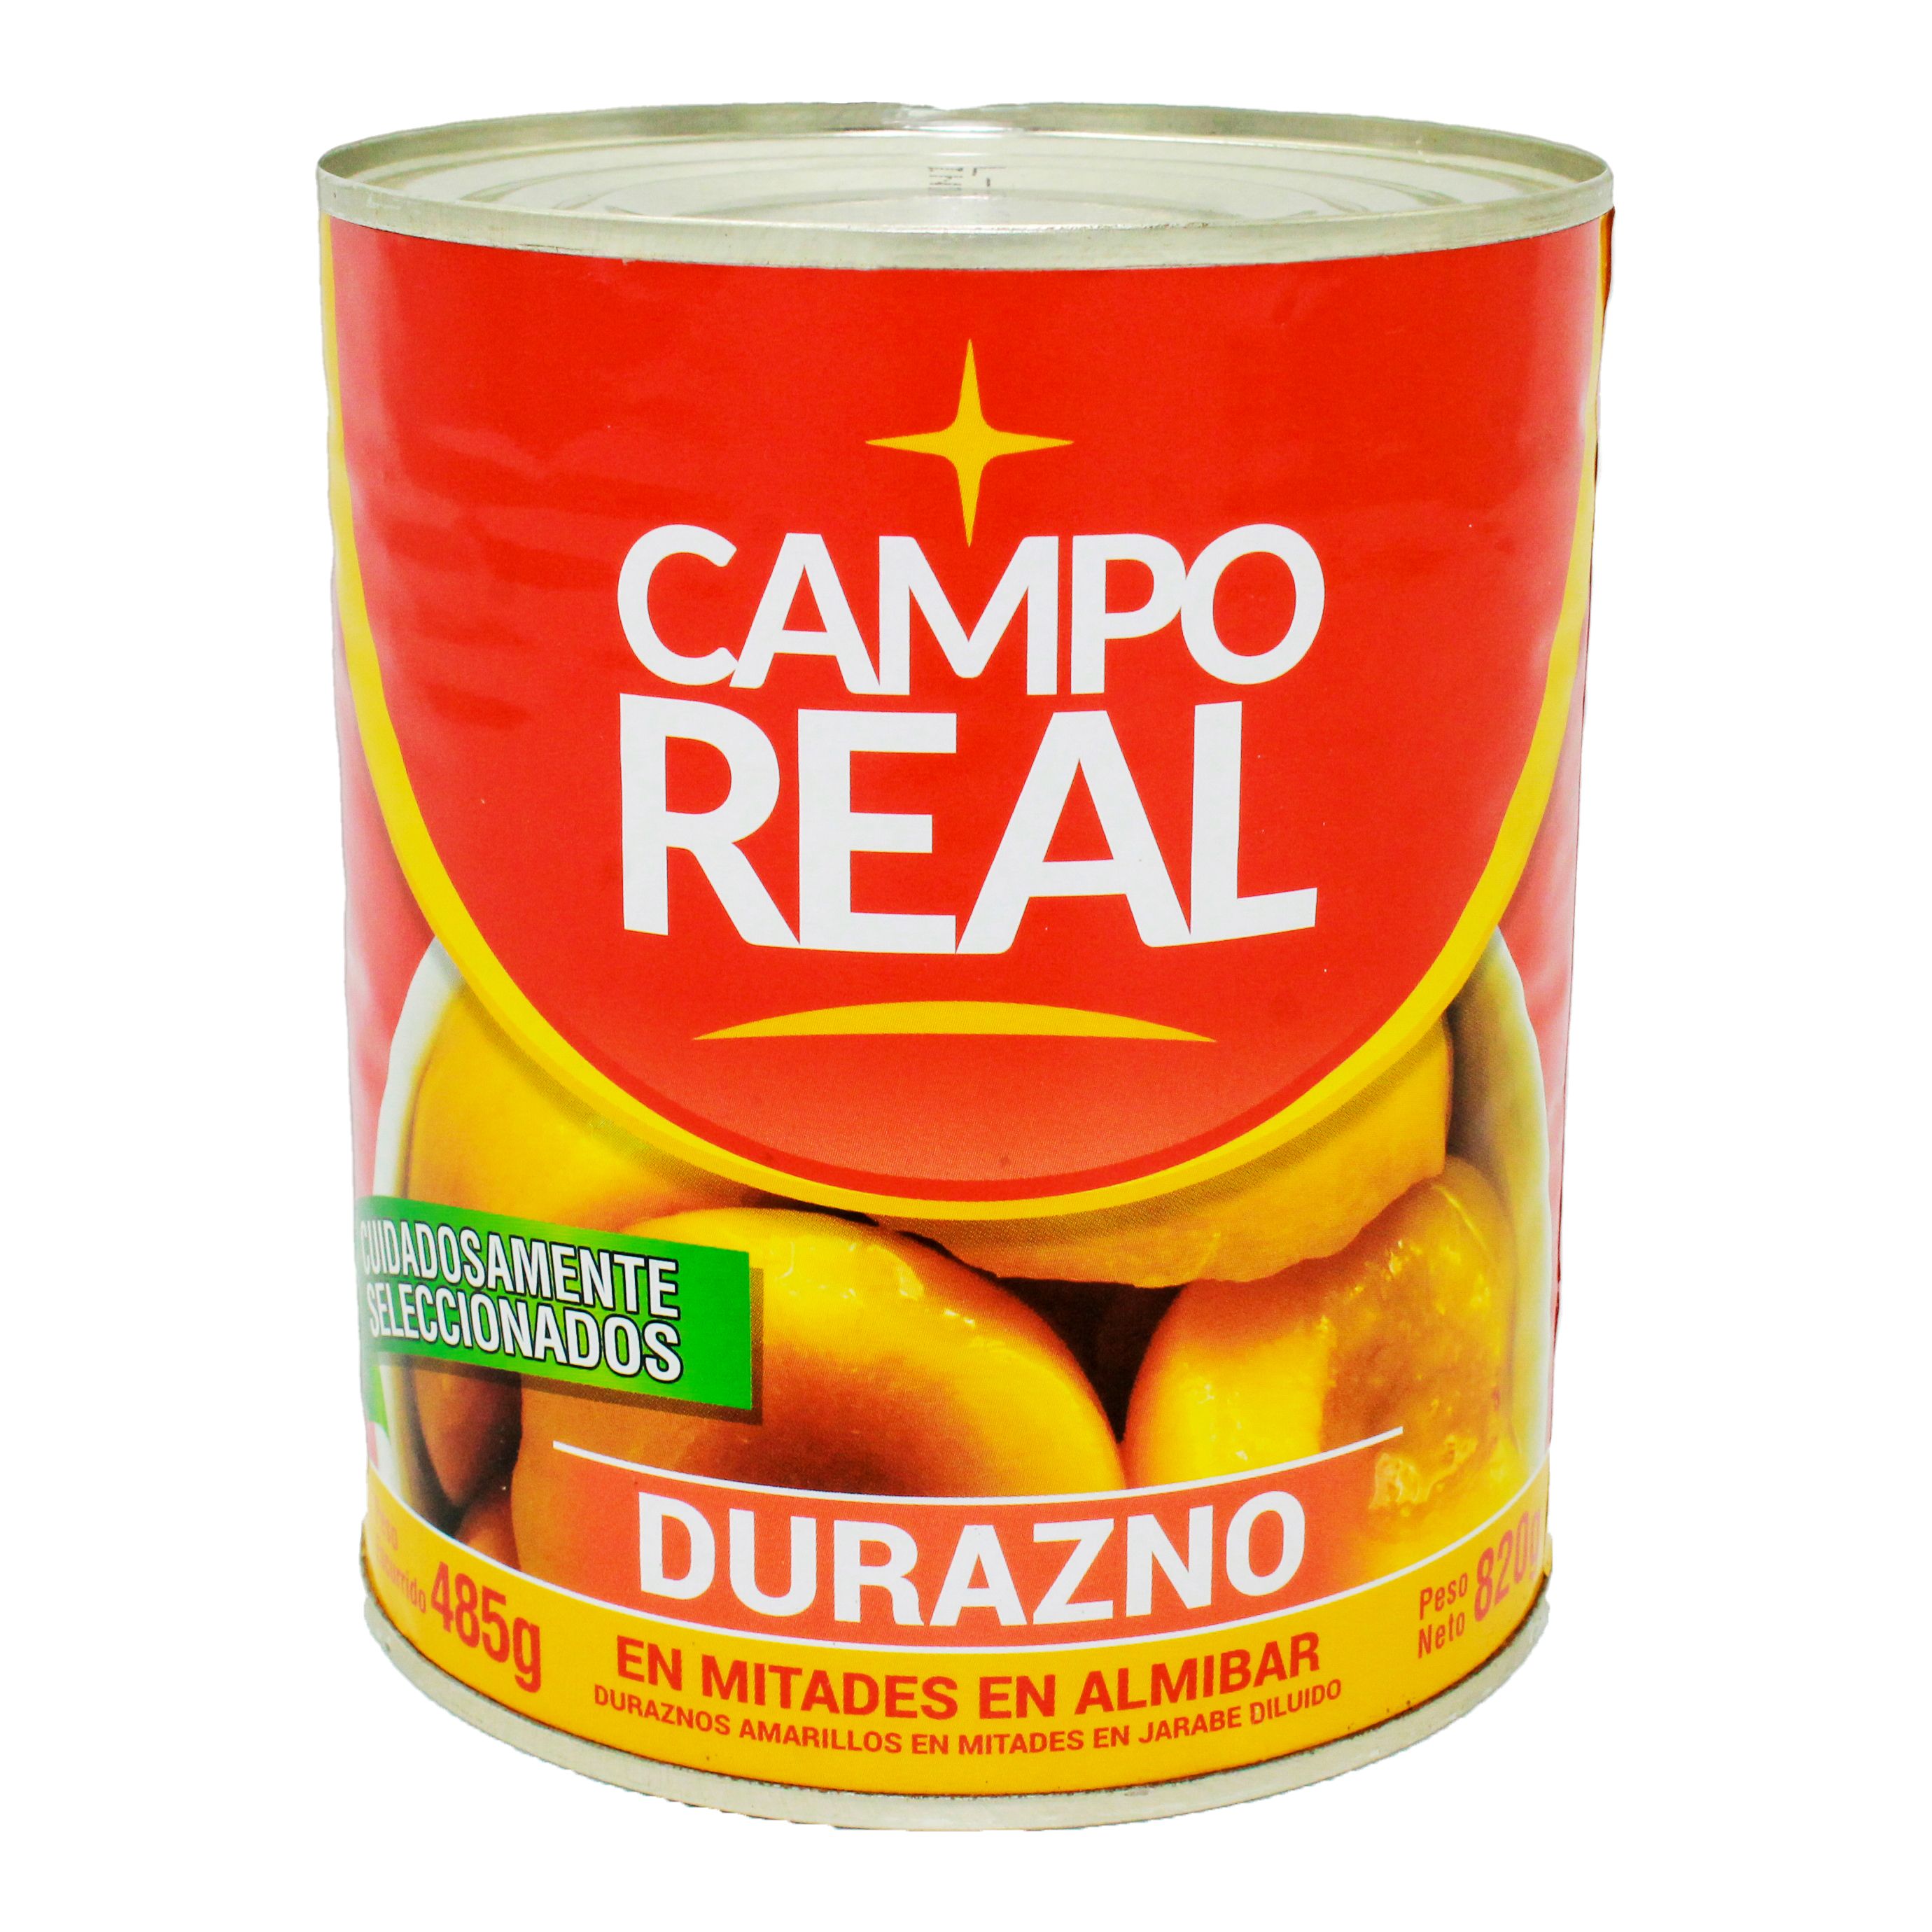 CAMPO REAL: la marca propia de los productos de Cadena Real con calidad garantizada